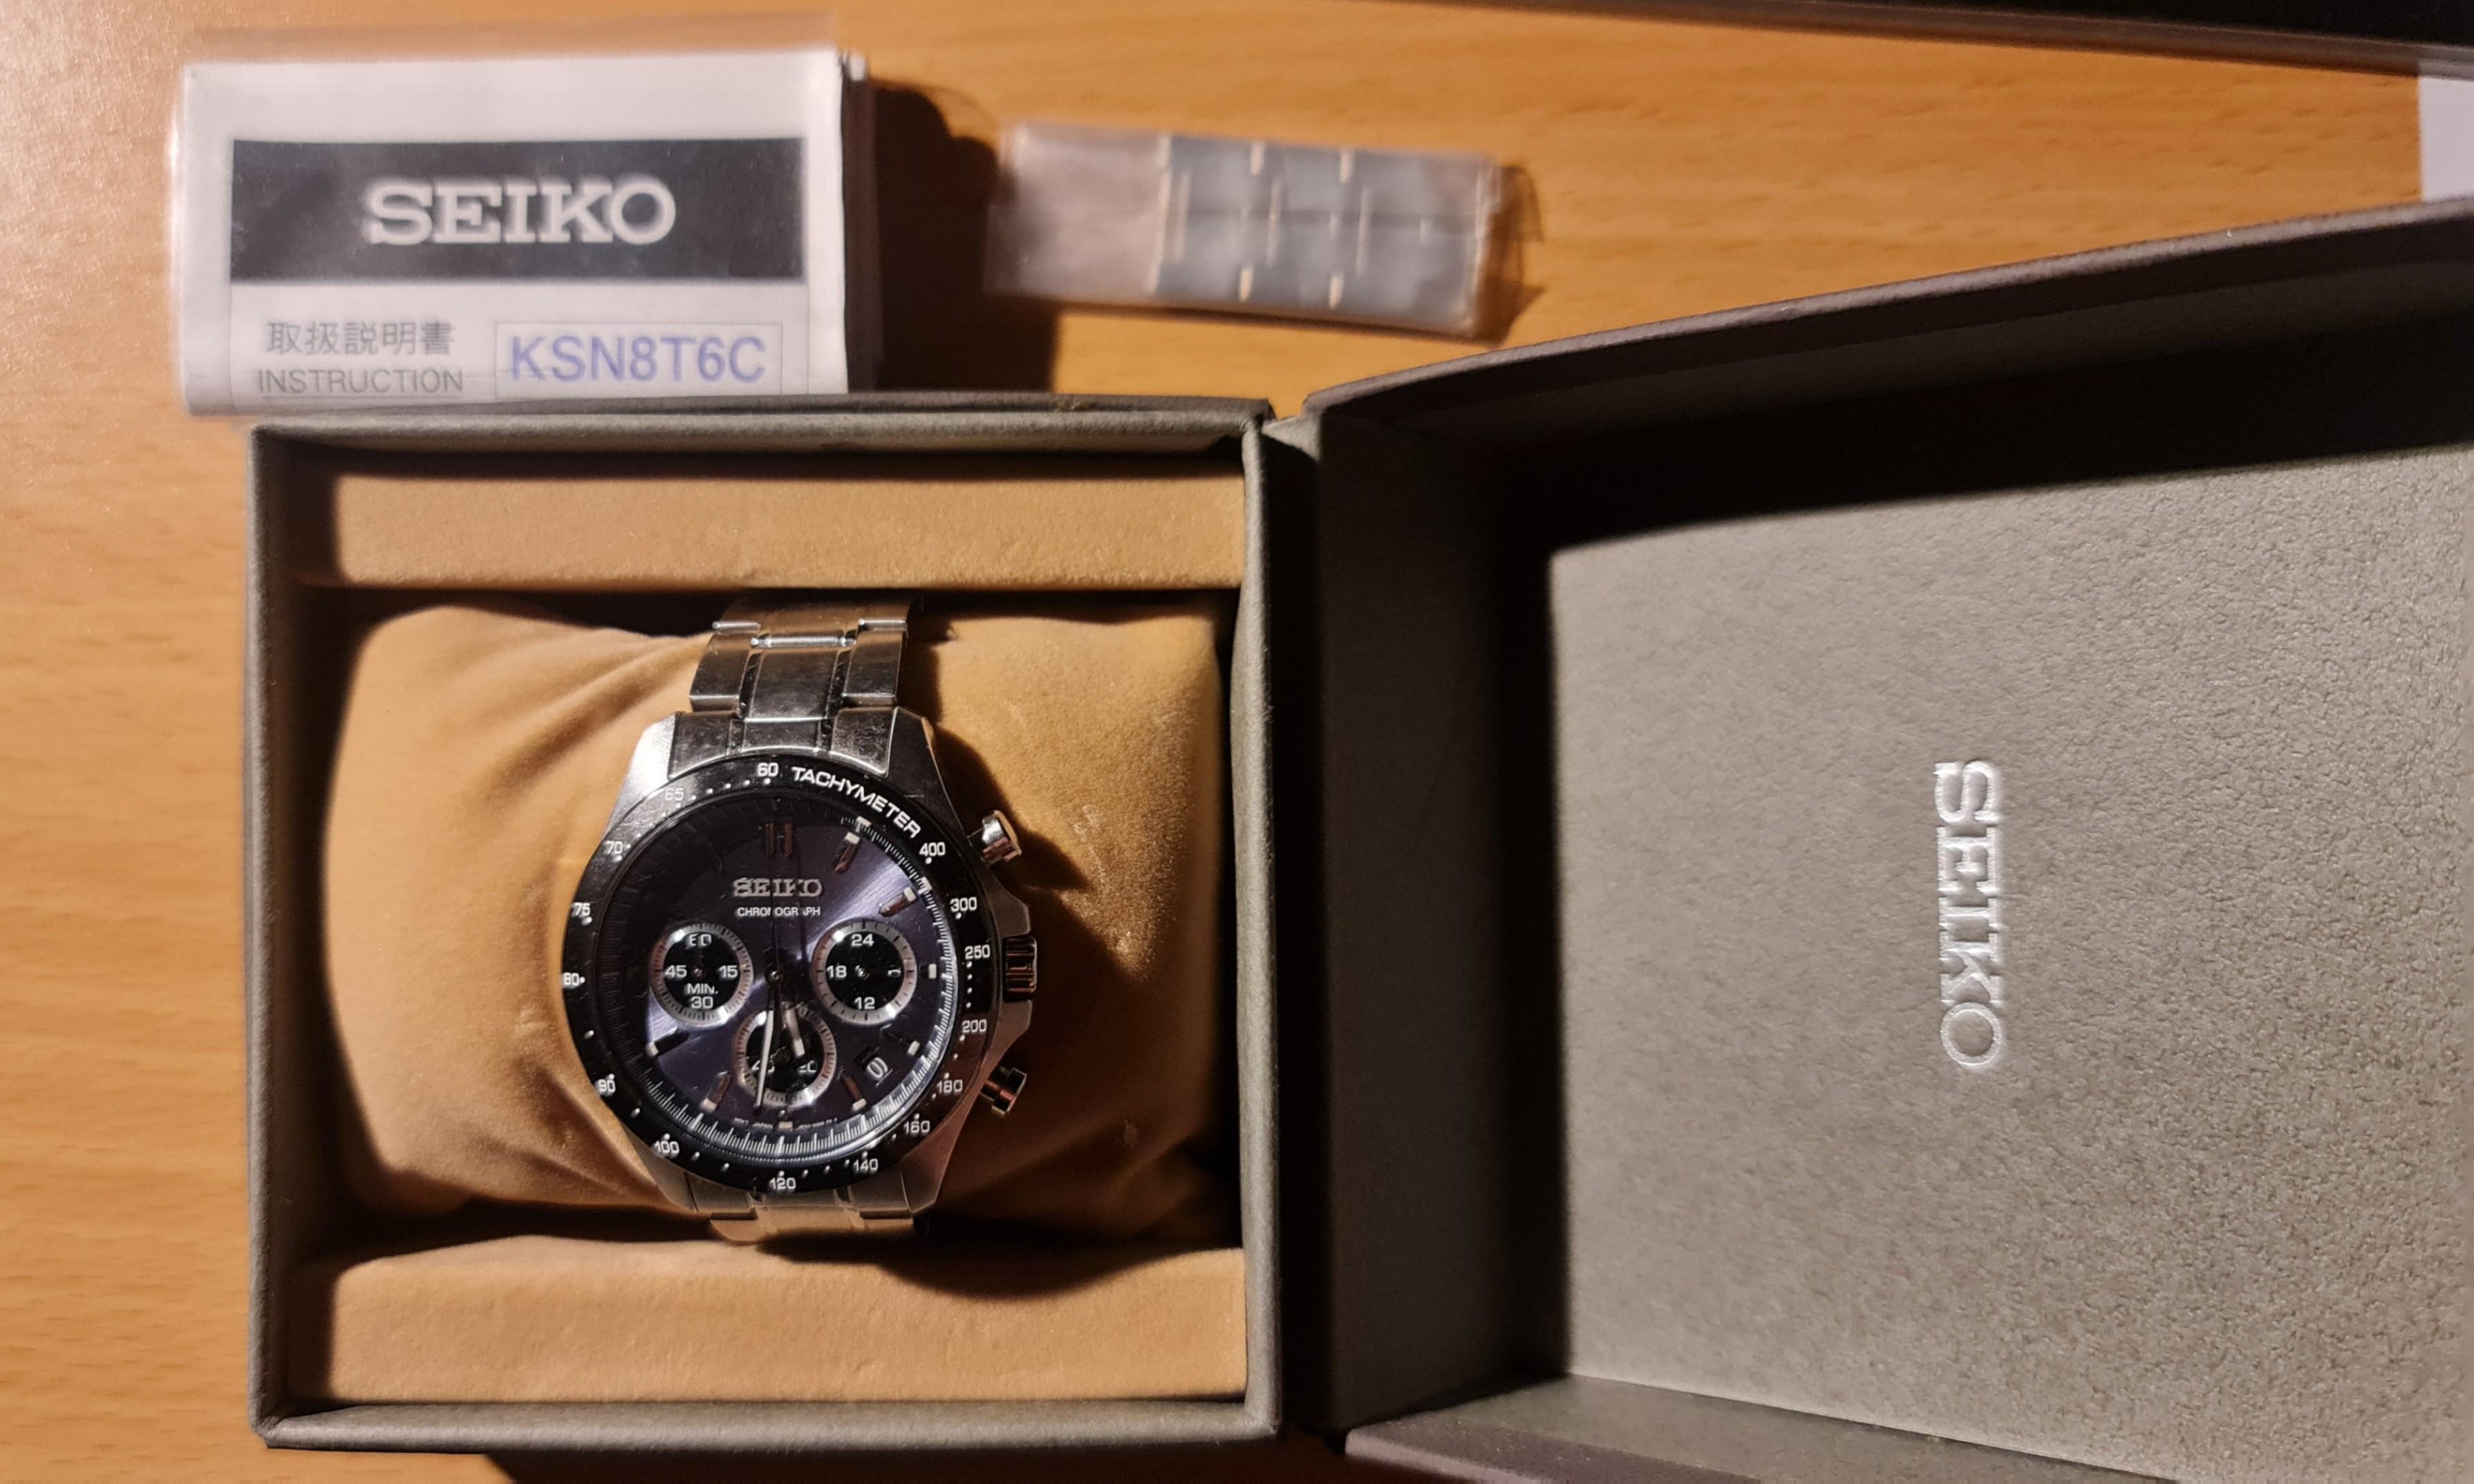 SEIKO セイコー KSN8T6C - 腕時計(アナログ)